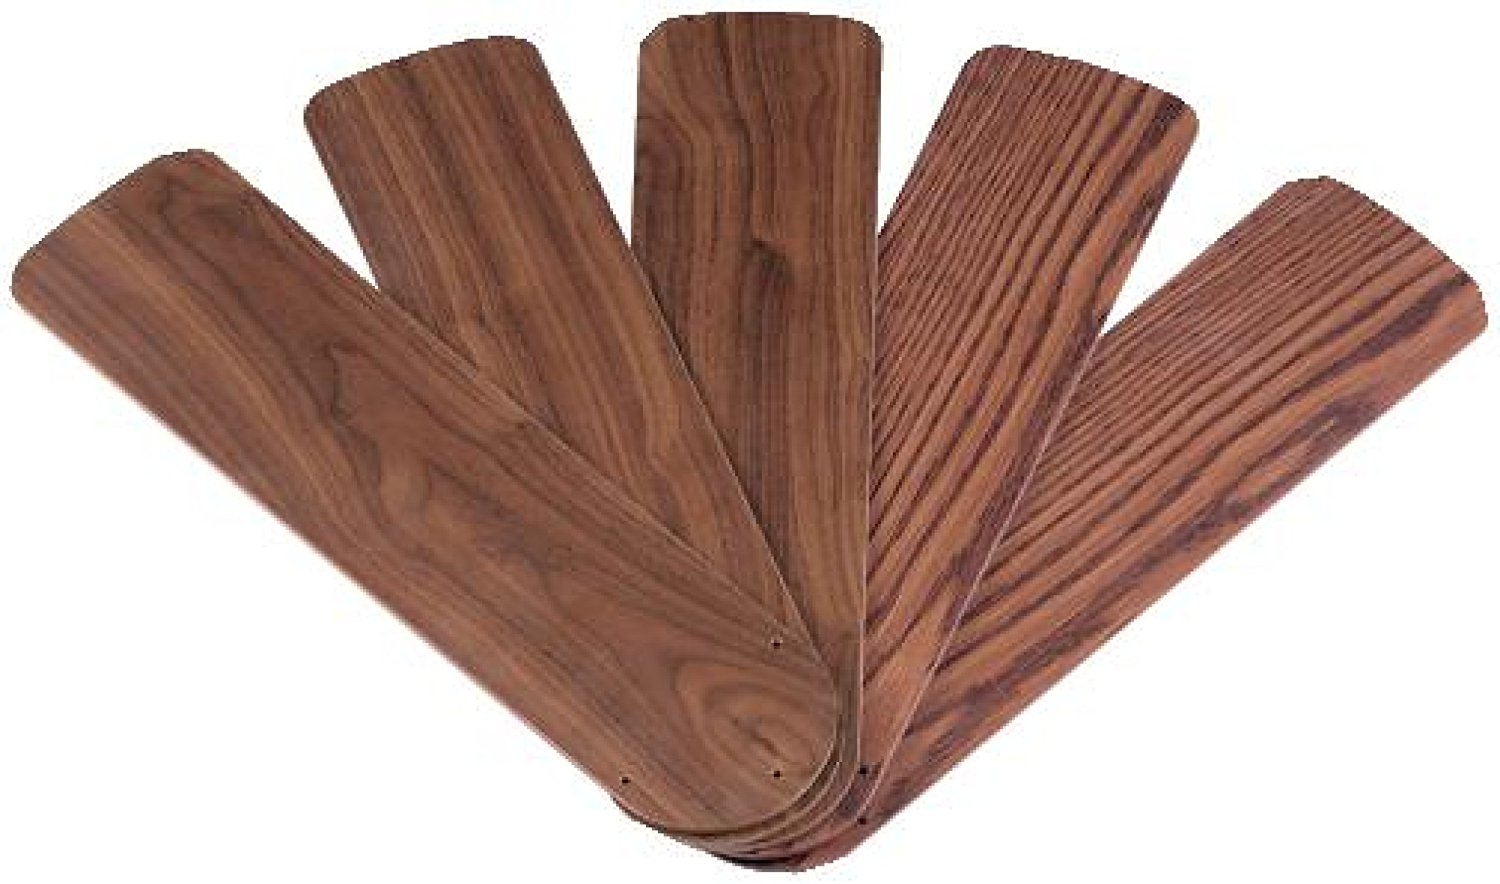 Westinghouse 7741500 52-Inch Oak/Walnut Replacement Fan Blades, Five-Pack